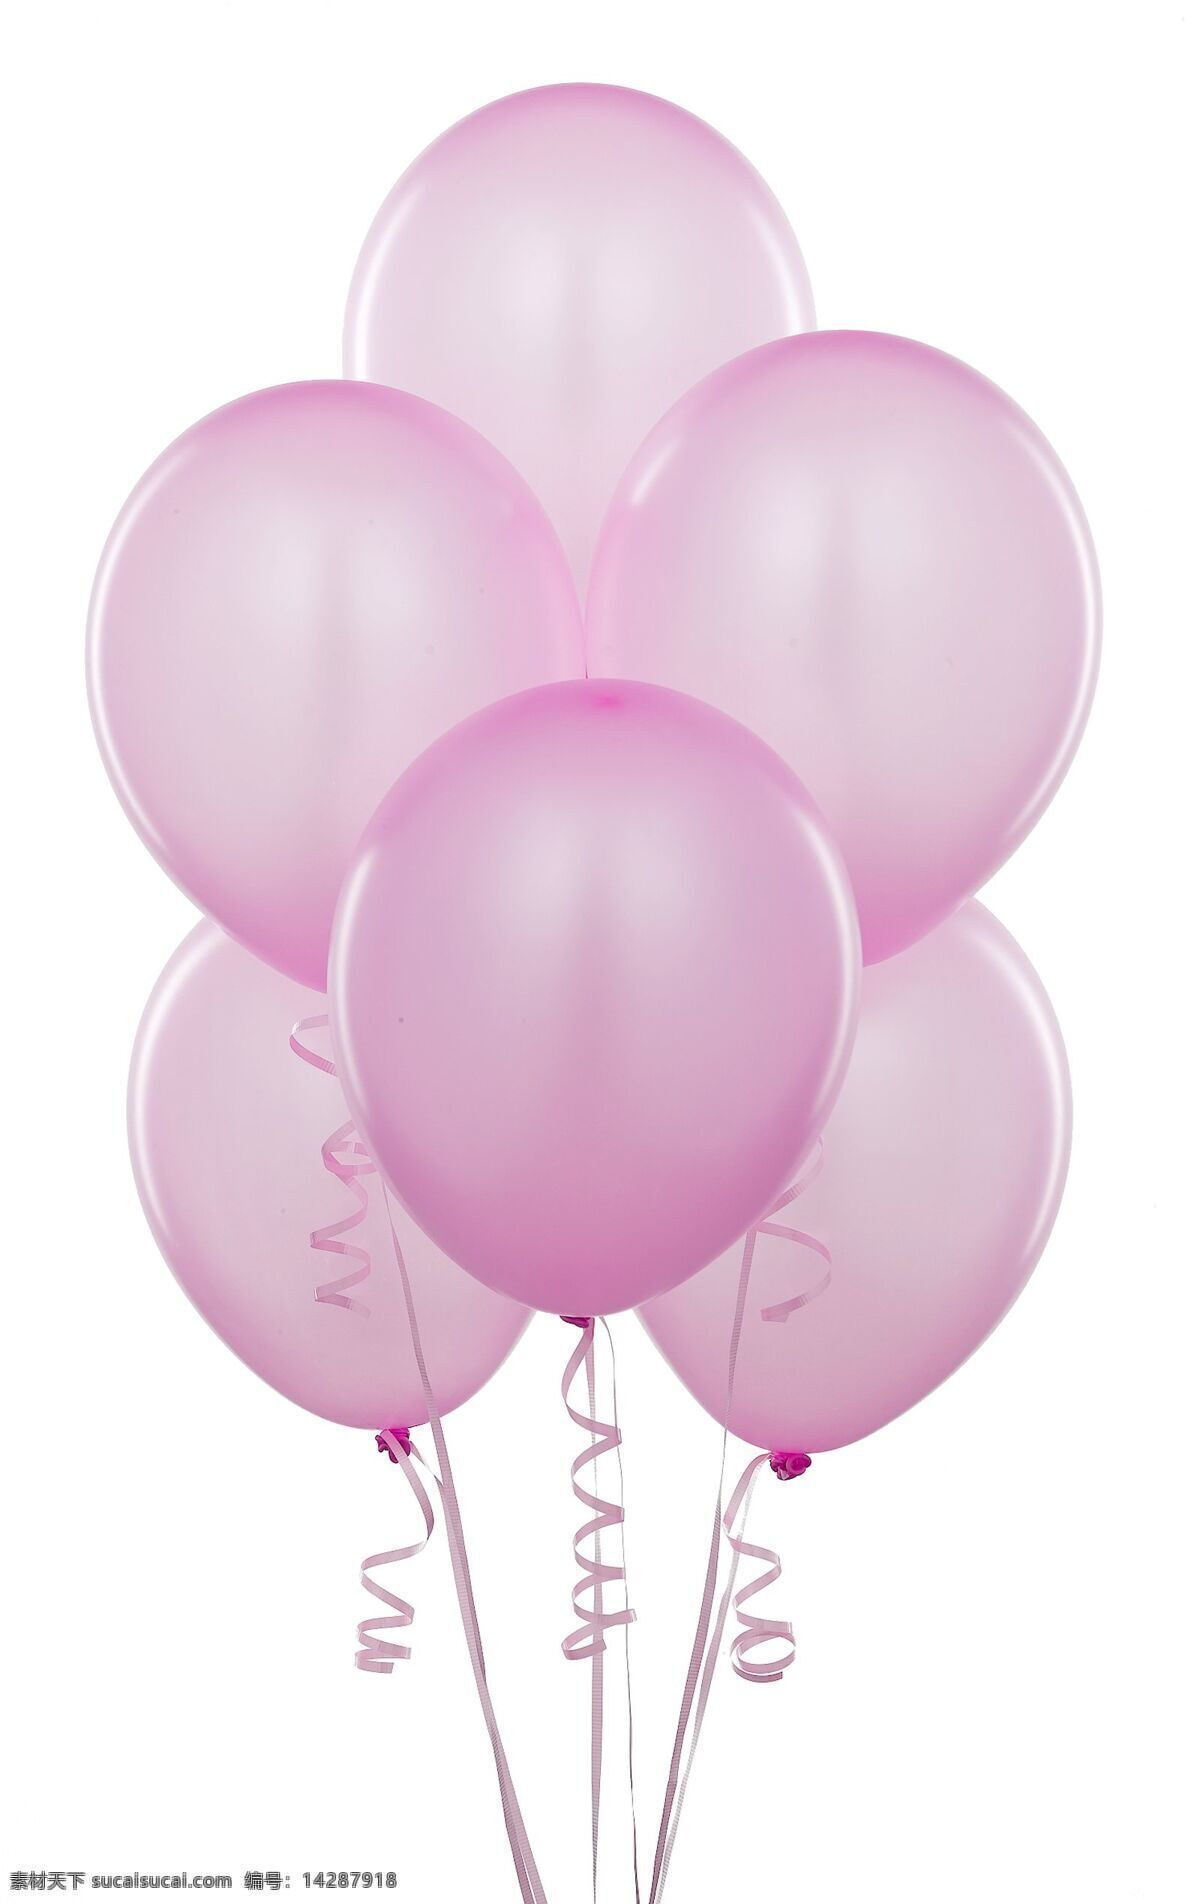 粉色气球 粉色 气球 大气球 一捆气球 一堆气球 漂亮气球 绸带 生活百科